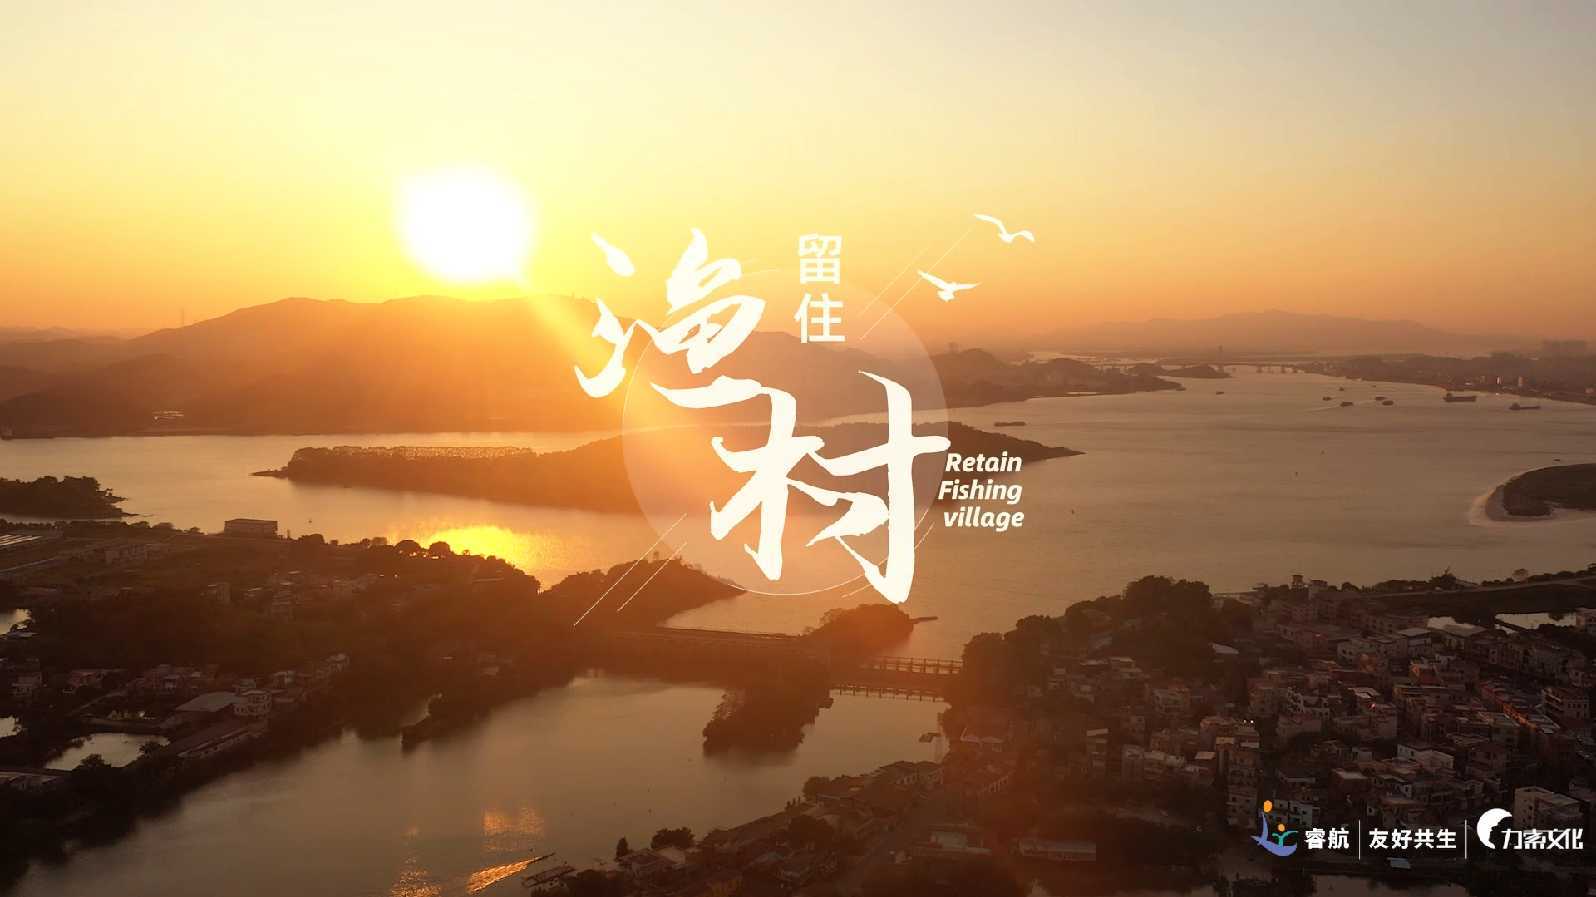 顺德龙江甘竹左滩渔业村纪录片《留住·渔村》